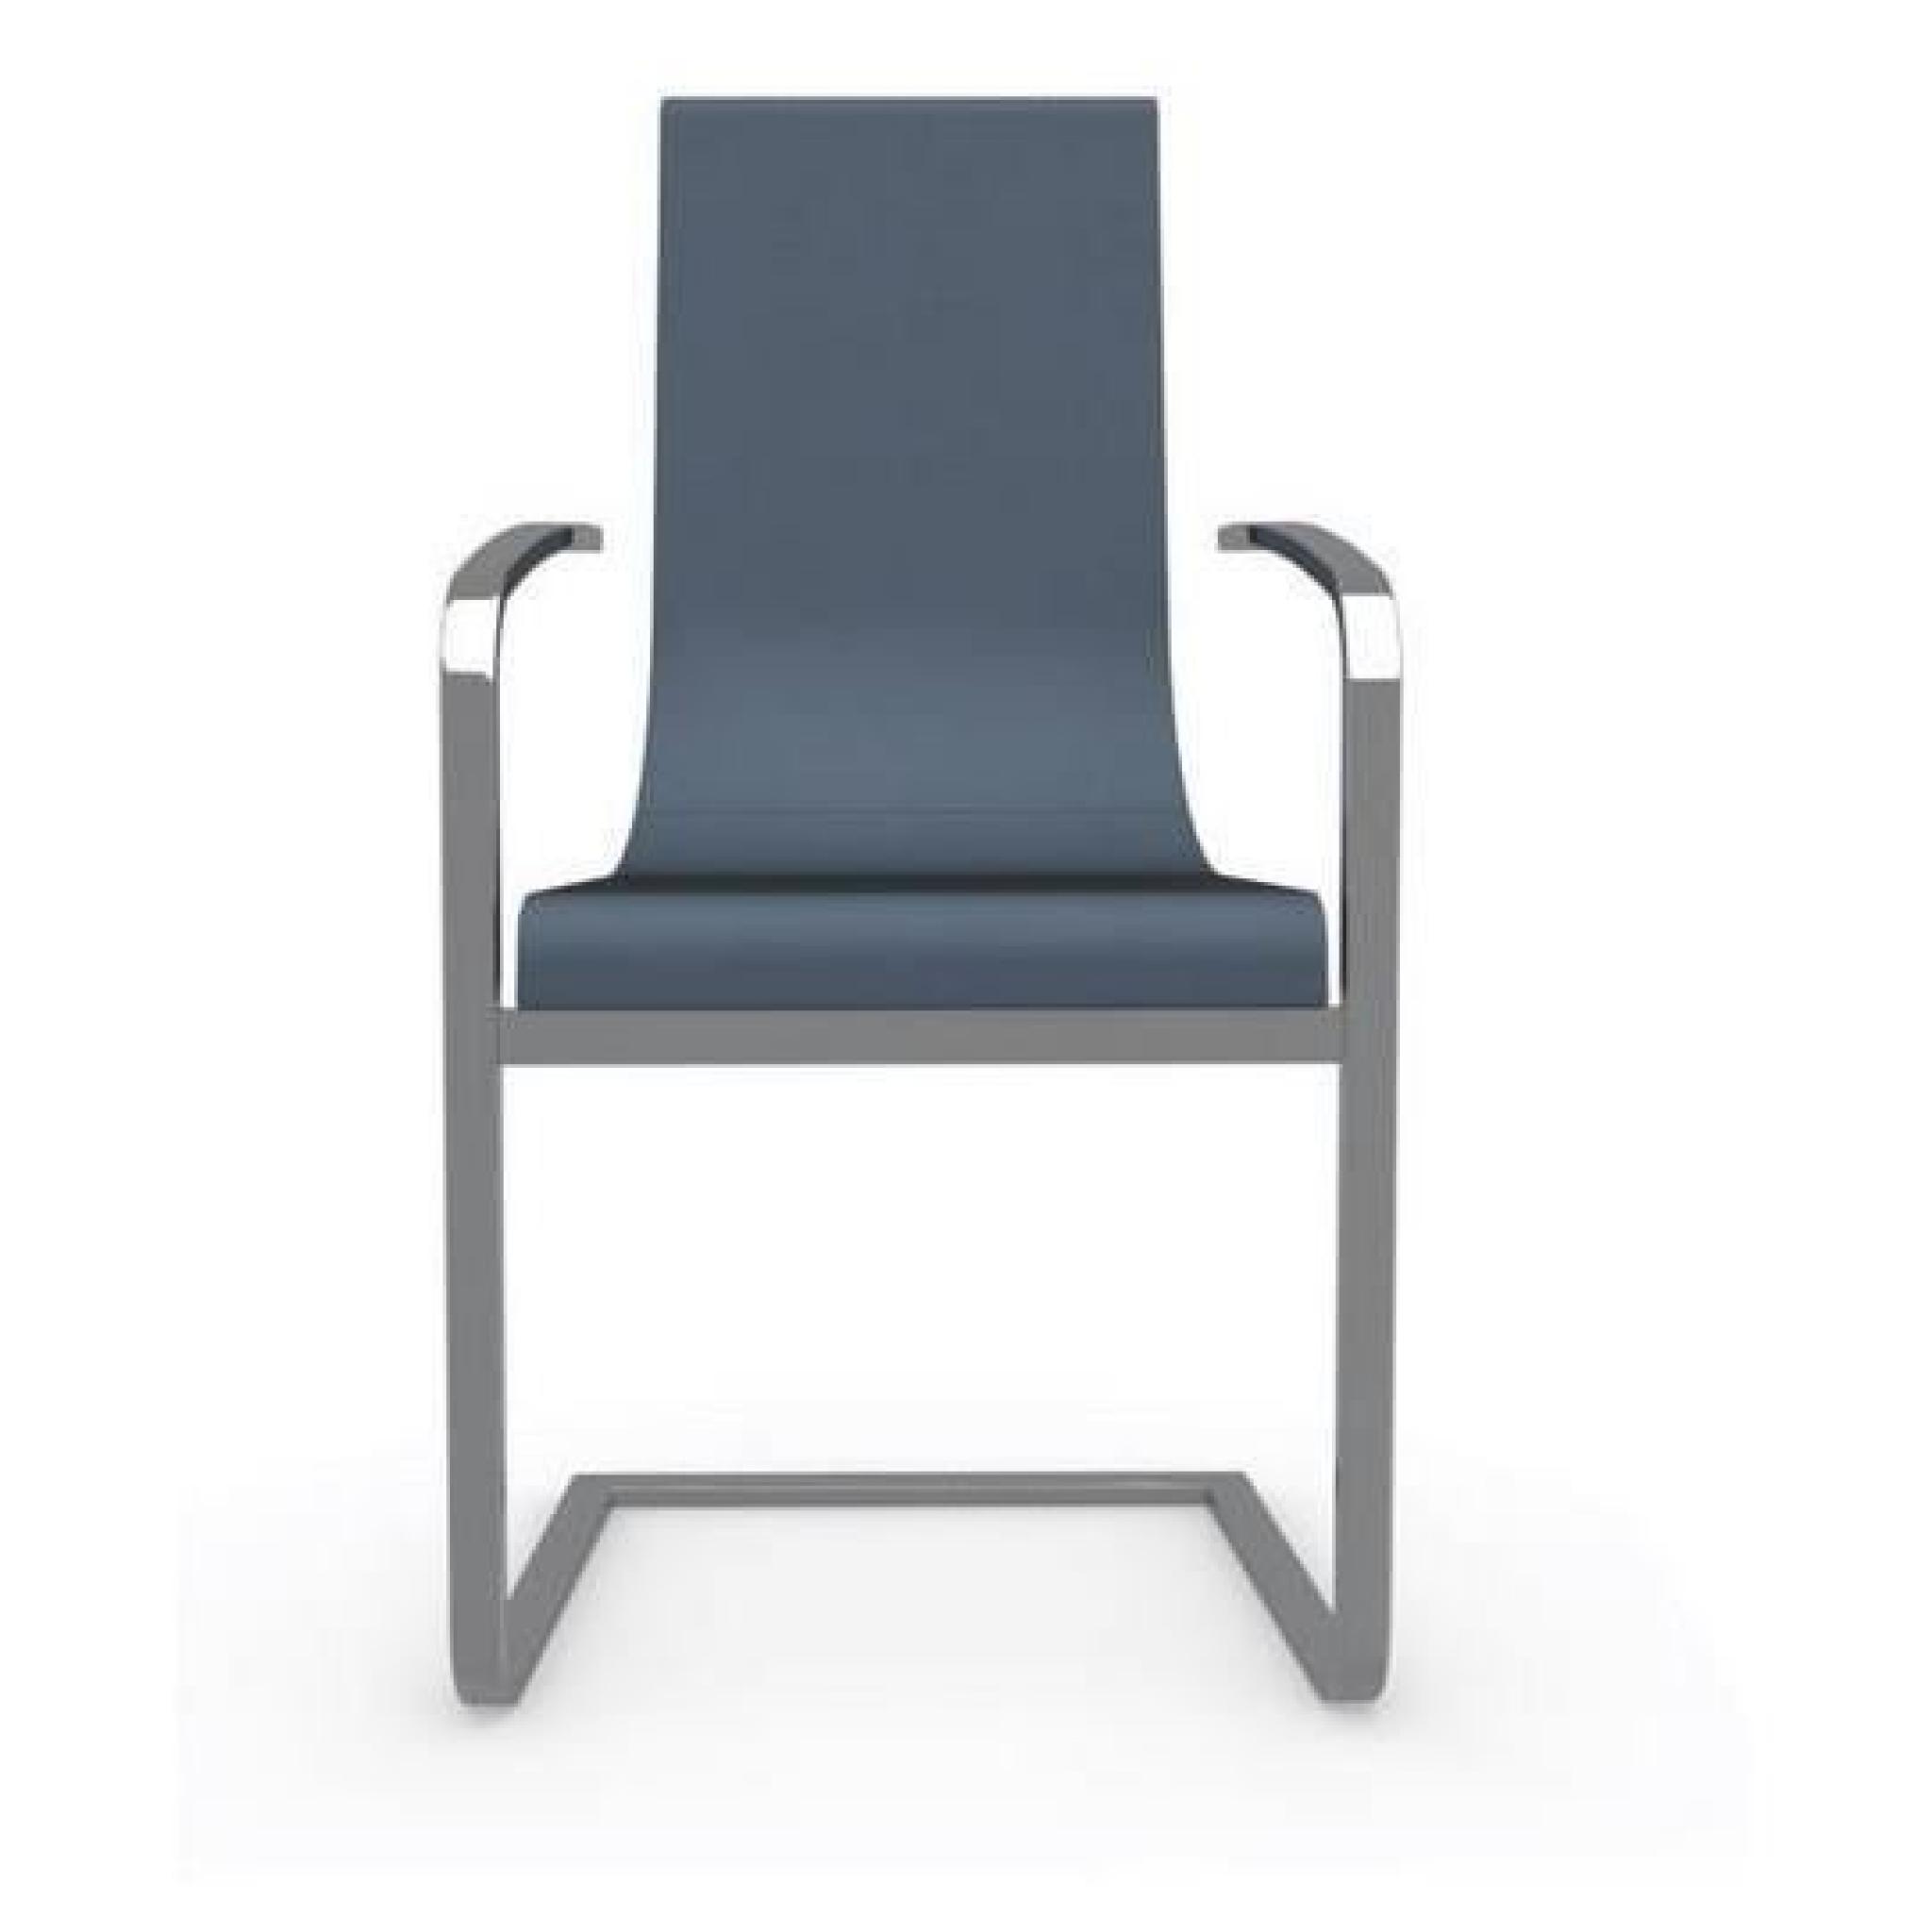 CRUISER chaise haut de gamme de CALLIGARIS avec accoudoirs plusieurs choix de coloris